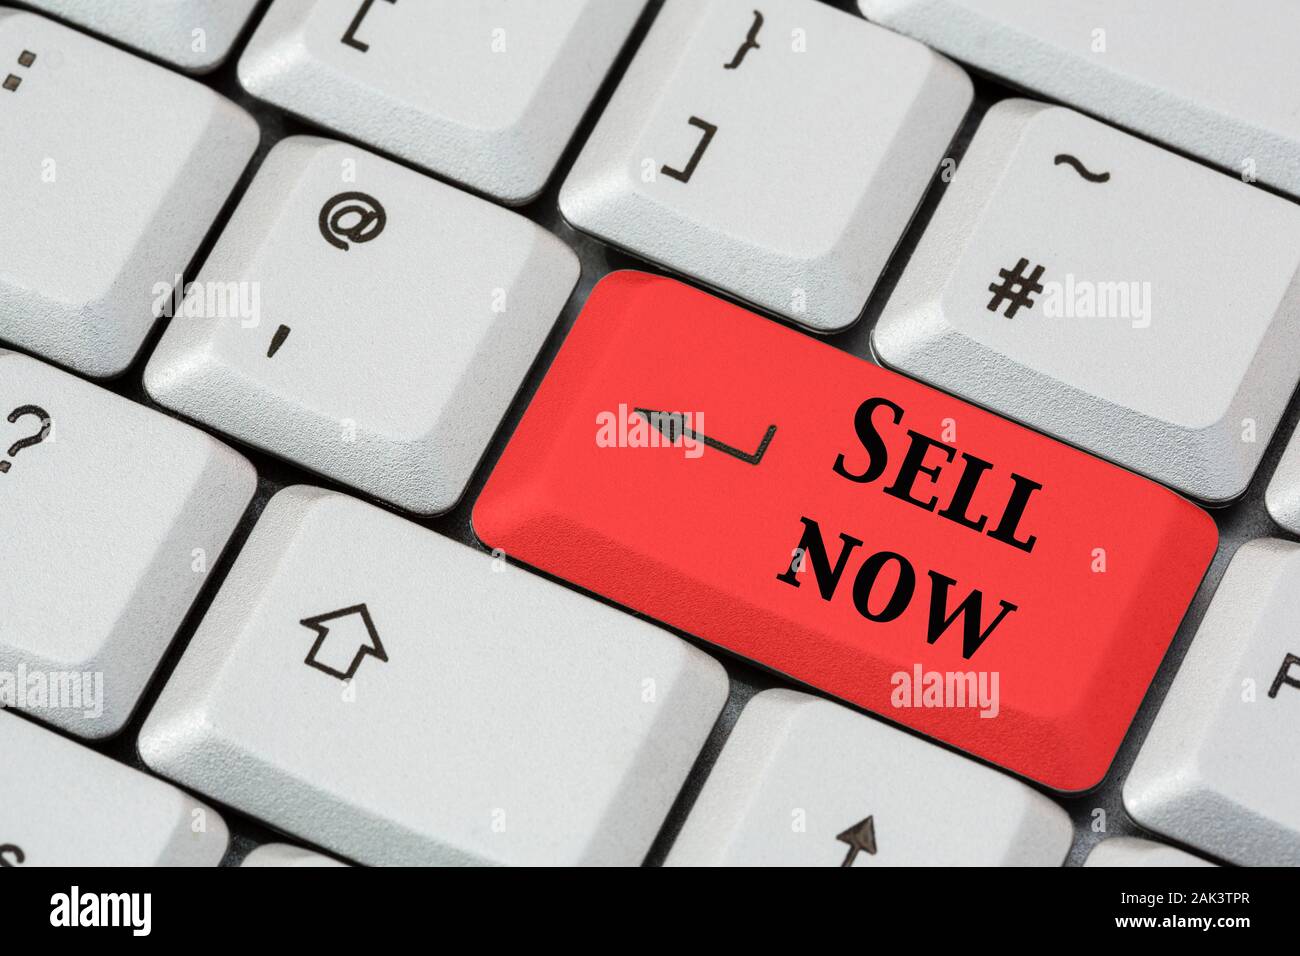 Una tastiera con Sell ora scritta in nero su un tasto di invio rosso. Investimento concetto di mercato azionario finanziario. Inghilterra, Regno Unito, Gran Bretagna Foto Stock